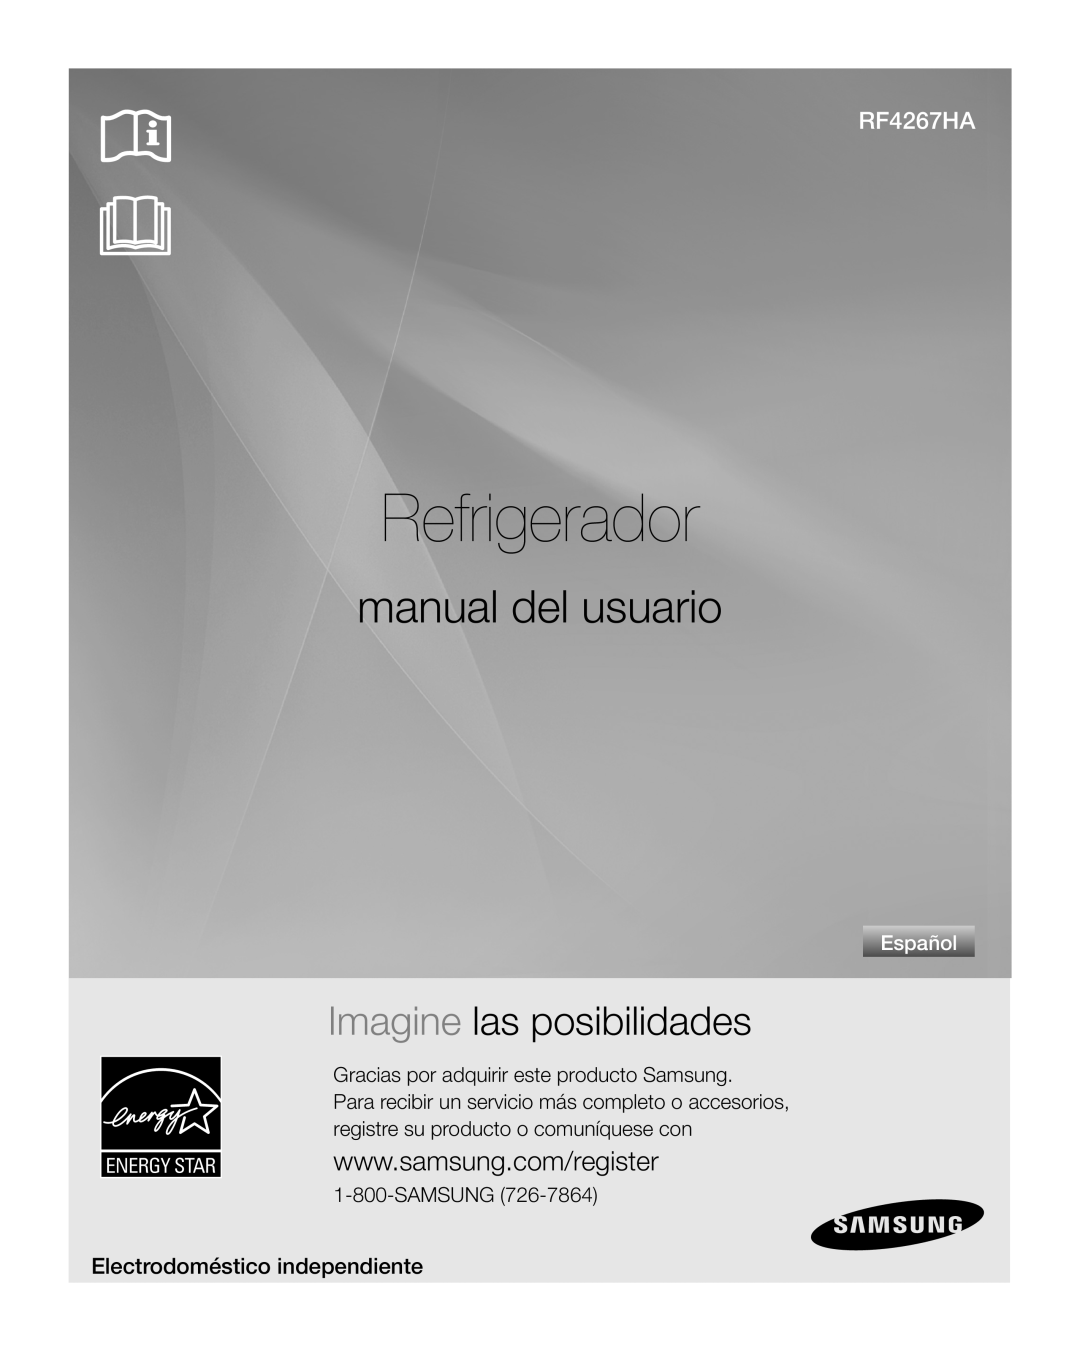 Samsung RF4267HA Refrigerador, manual del usuario, Imagine las posibilidades, Electrodoméstico independiente, Español 